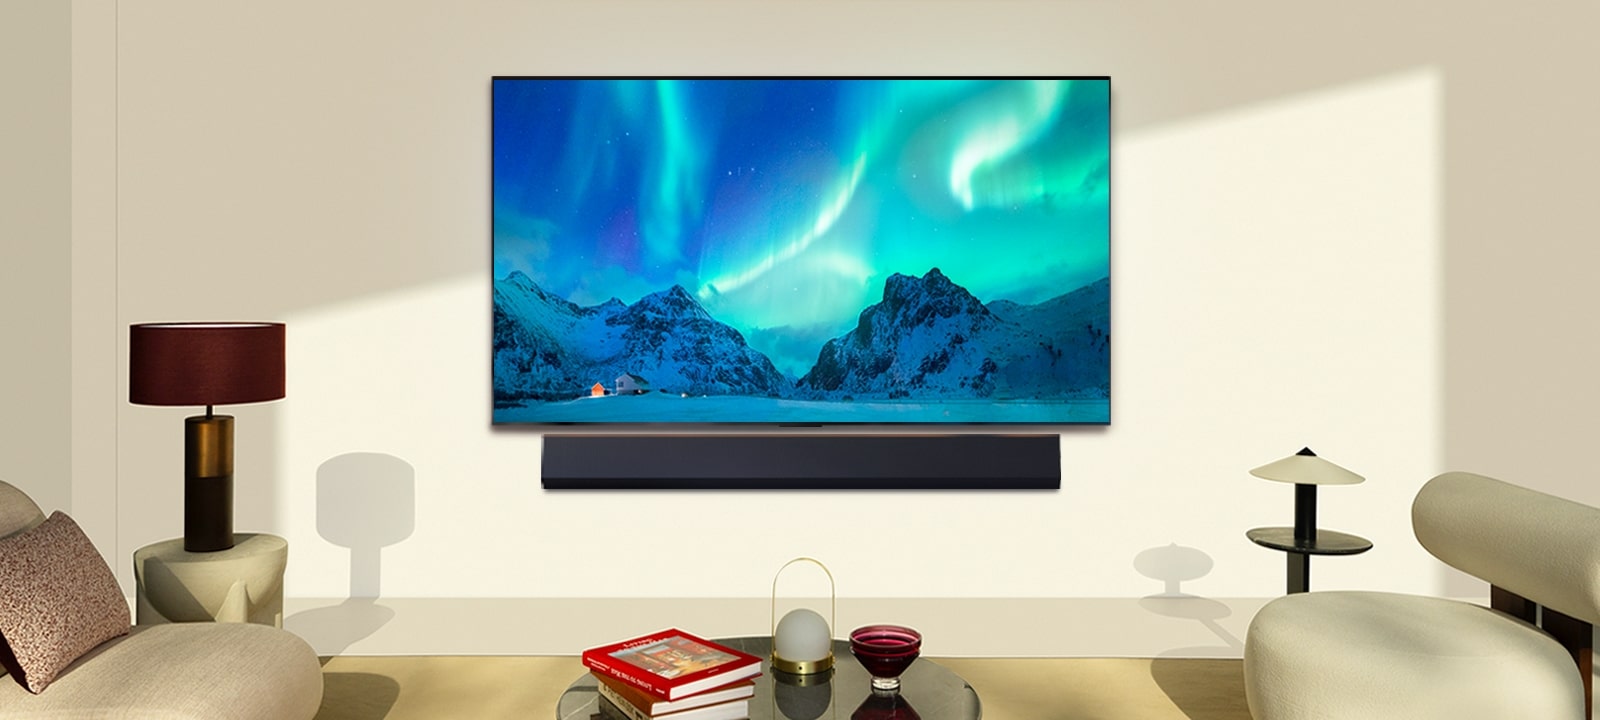 Imagine cu televizorul LG și soundbar-ul LG într-un spațiu de locuit modern, în timpul zilei. Imaginea de pe ecran cu aurora boreală este afișată cu nivelurile ideale de luminozitate.